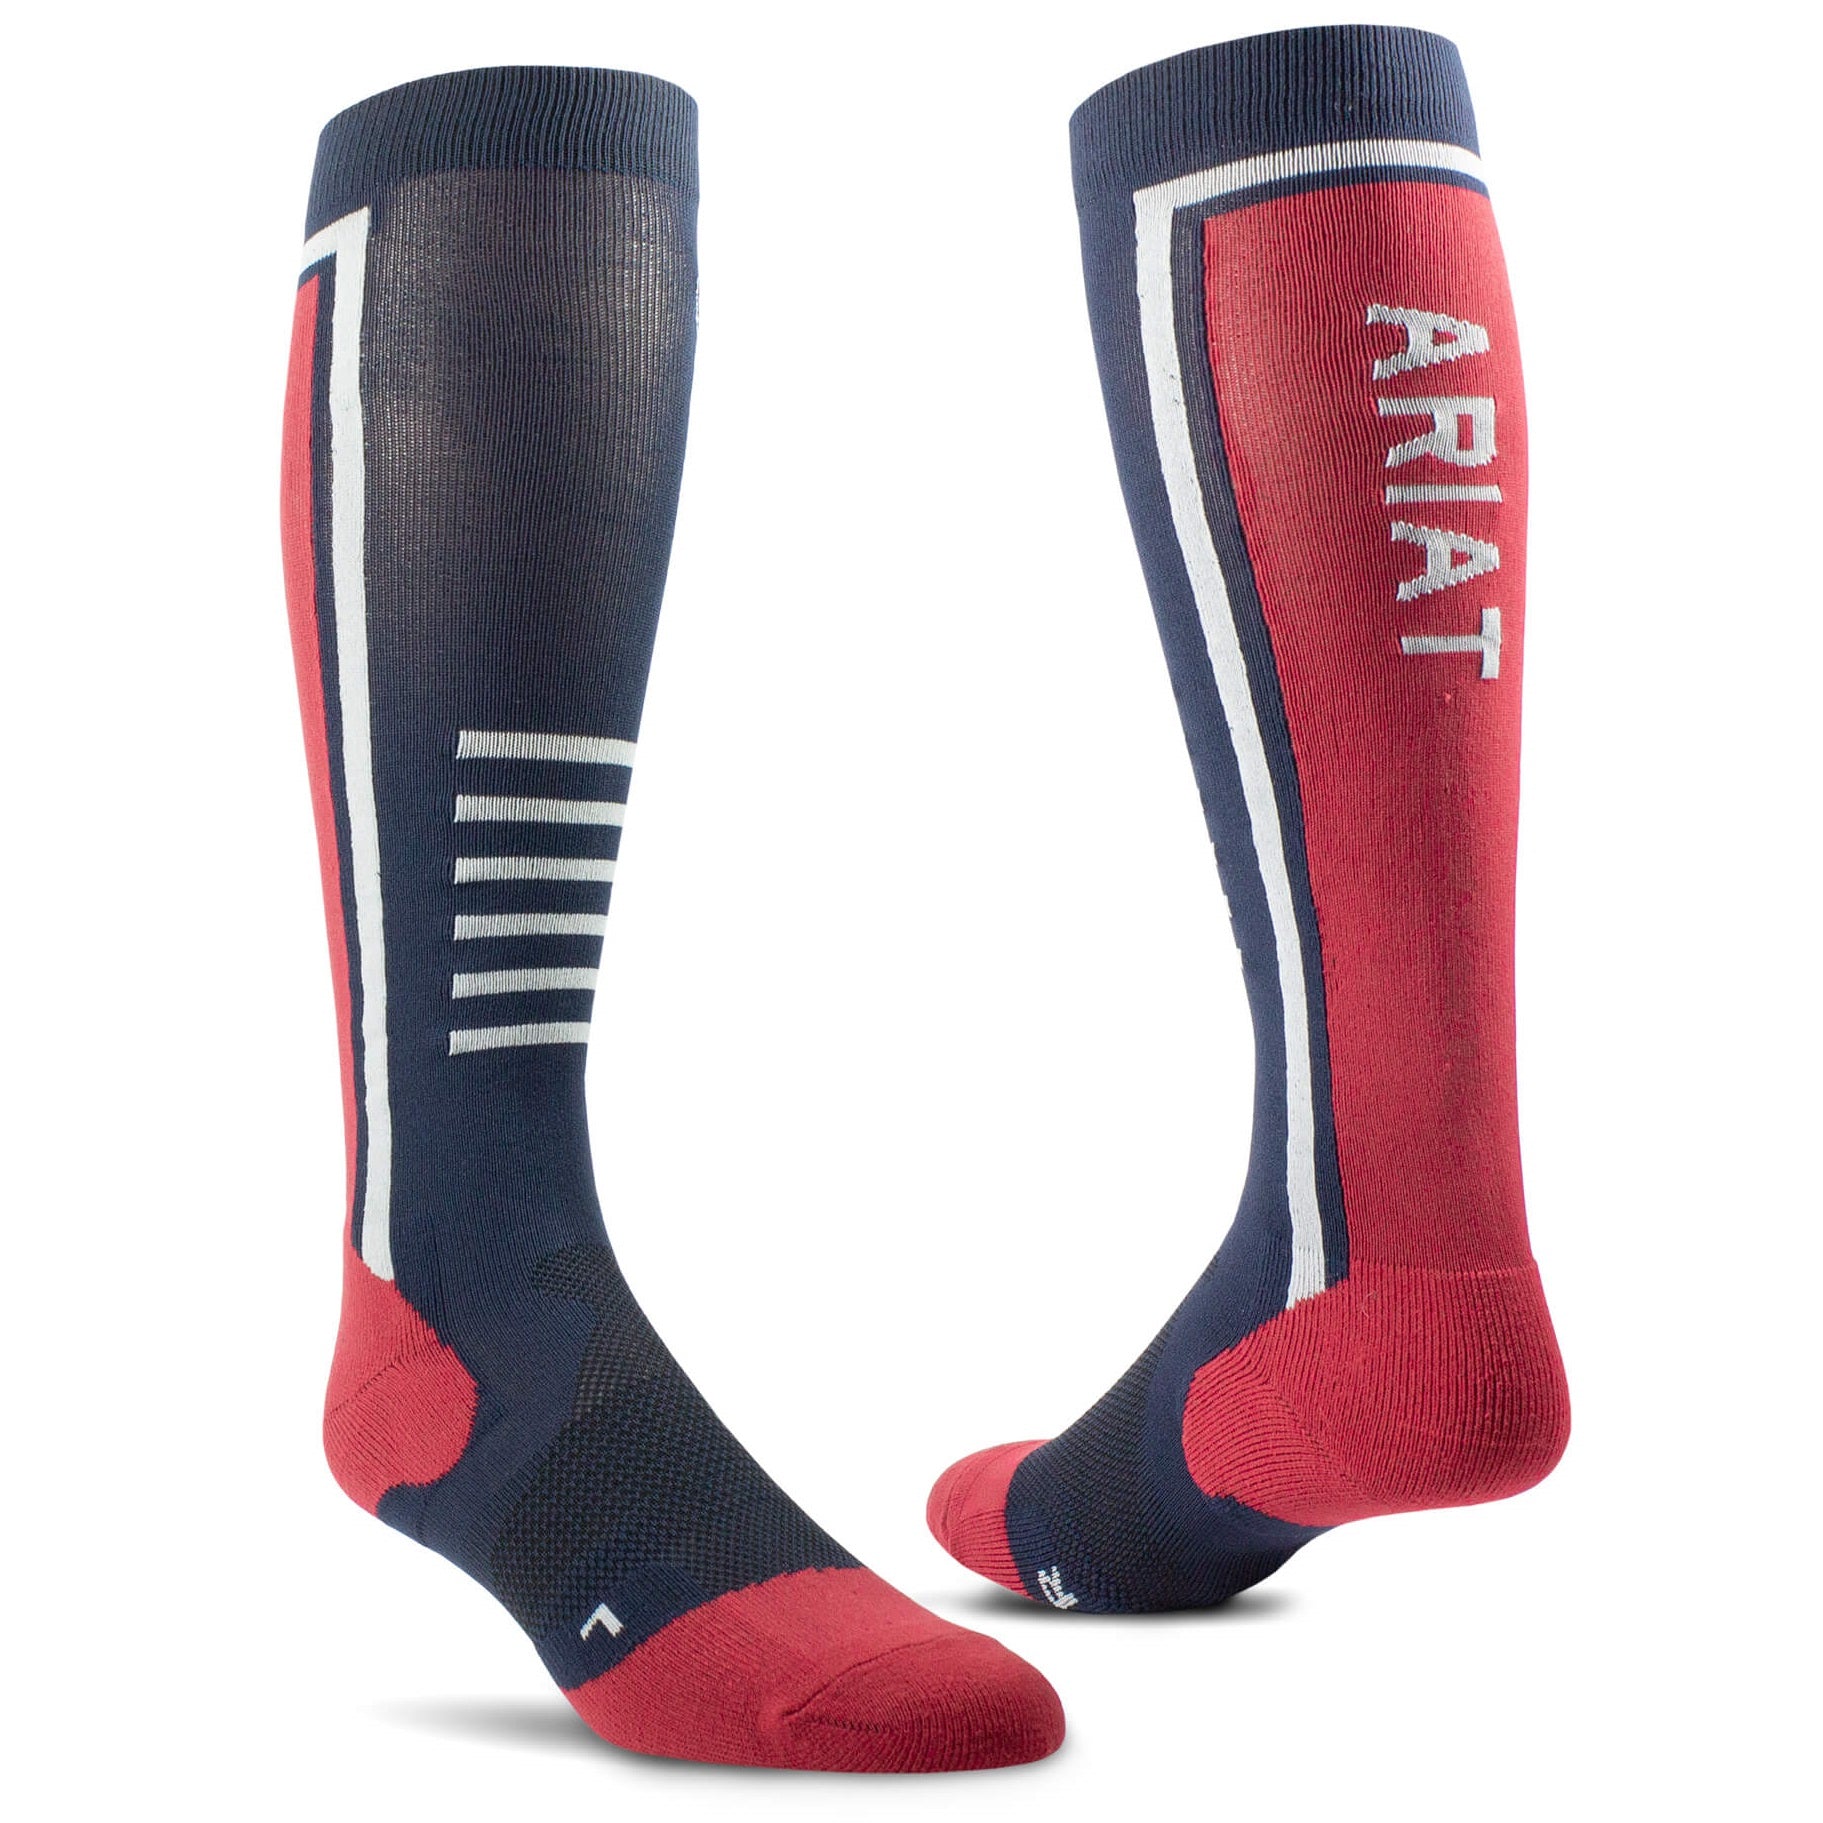 ARIAT TEK Slimline Performance Socks - Navy/Red